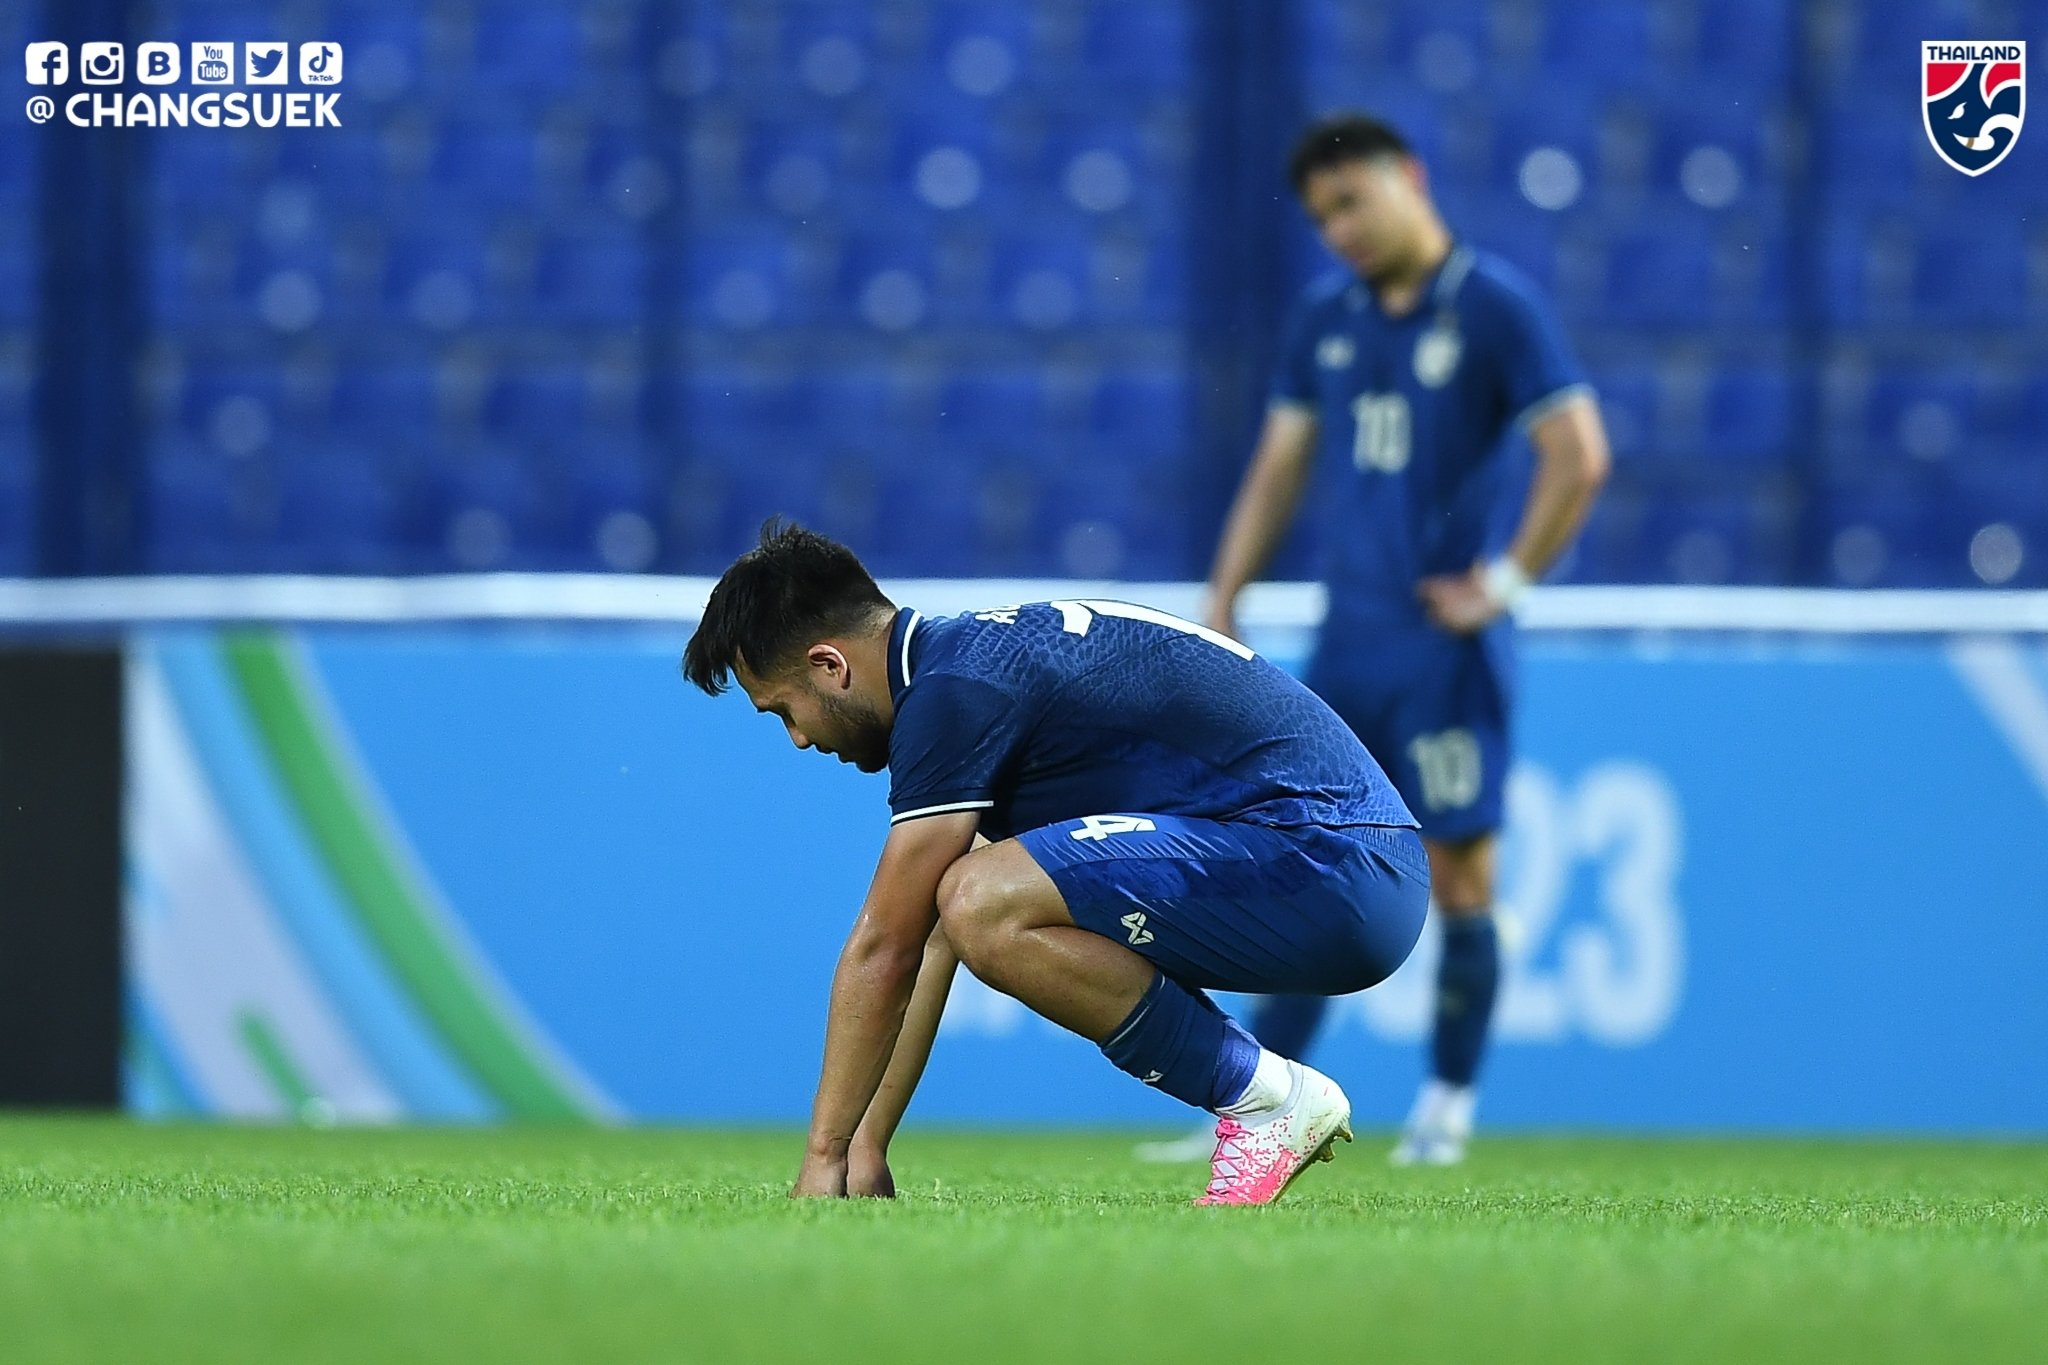 U23 Thái Lan thất vọng rời giải đấu sớm dù nhận được nhiều kỳ vọng từ người hâm mộ (ảnh: Changsuek).